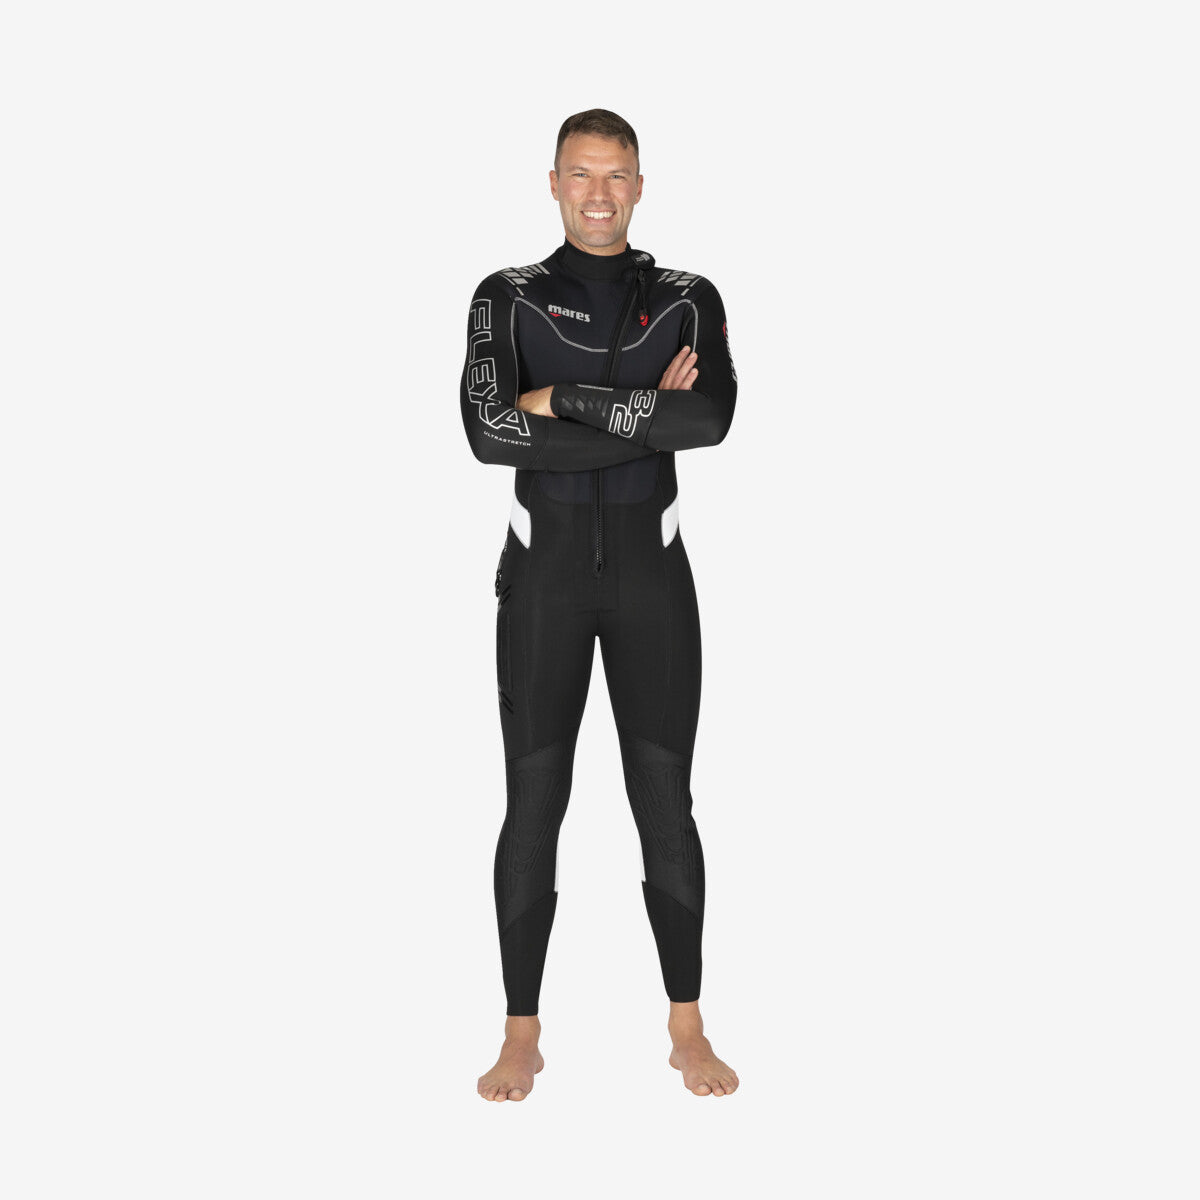 MARES Wetsuit Flexa 3/2 Man חליפת צלילה ארוכה לגברים